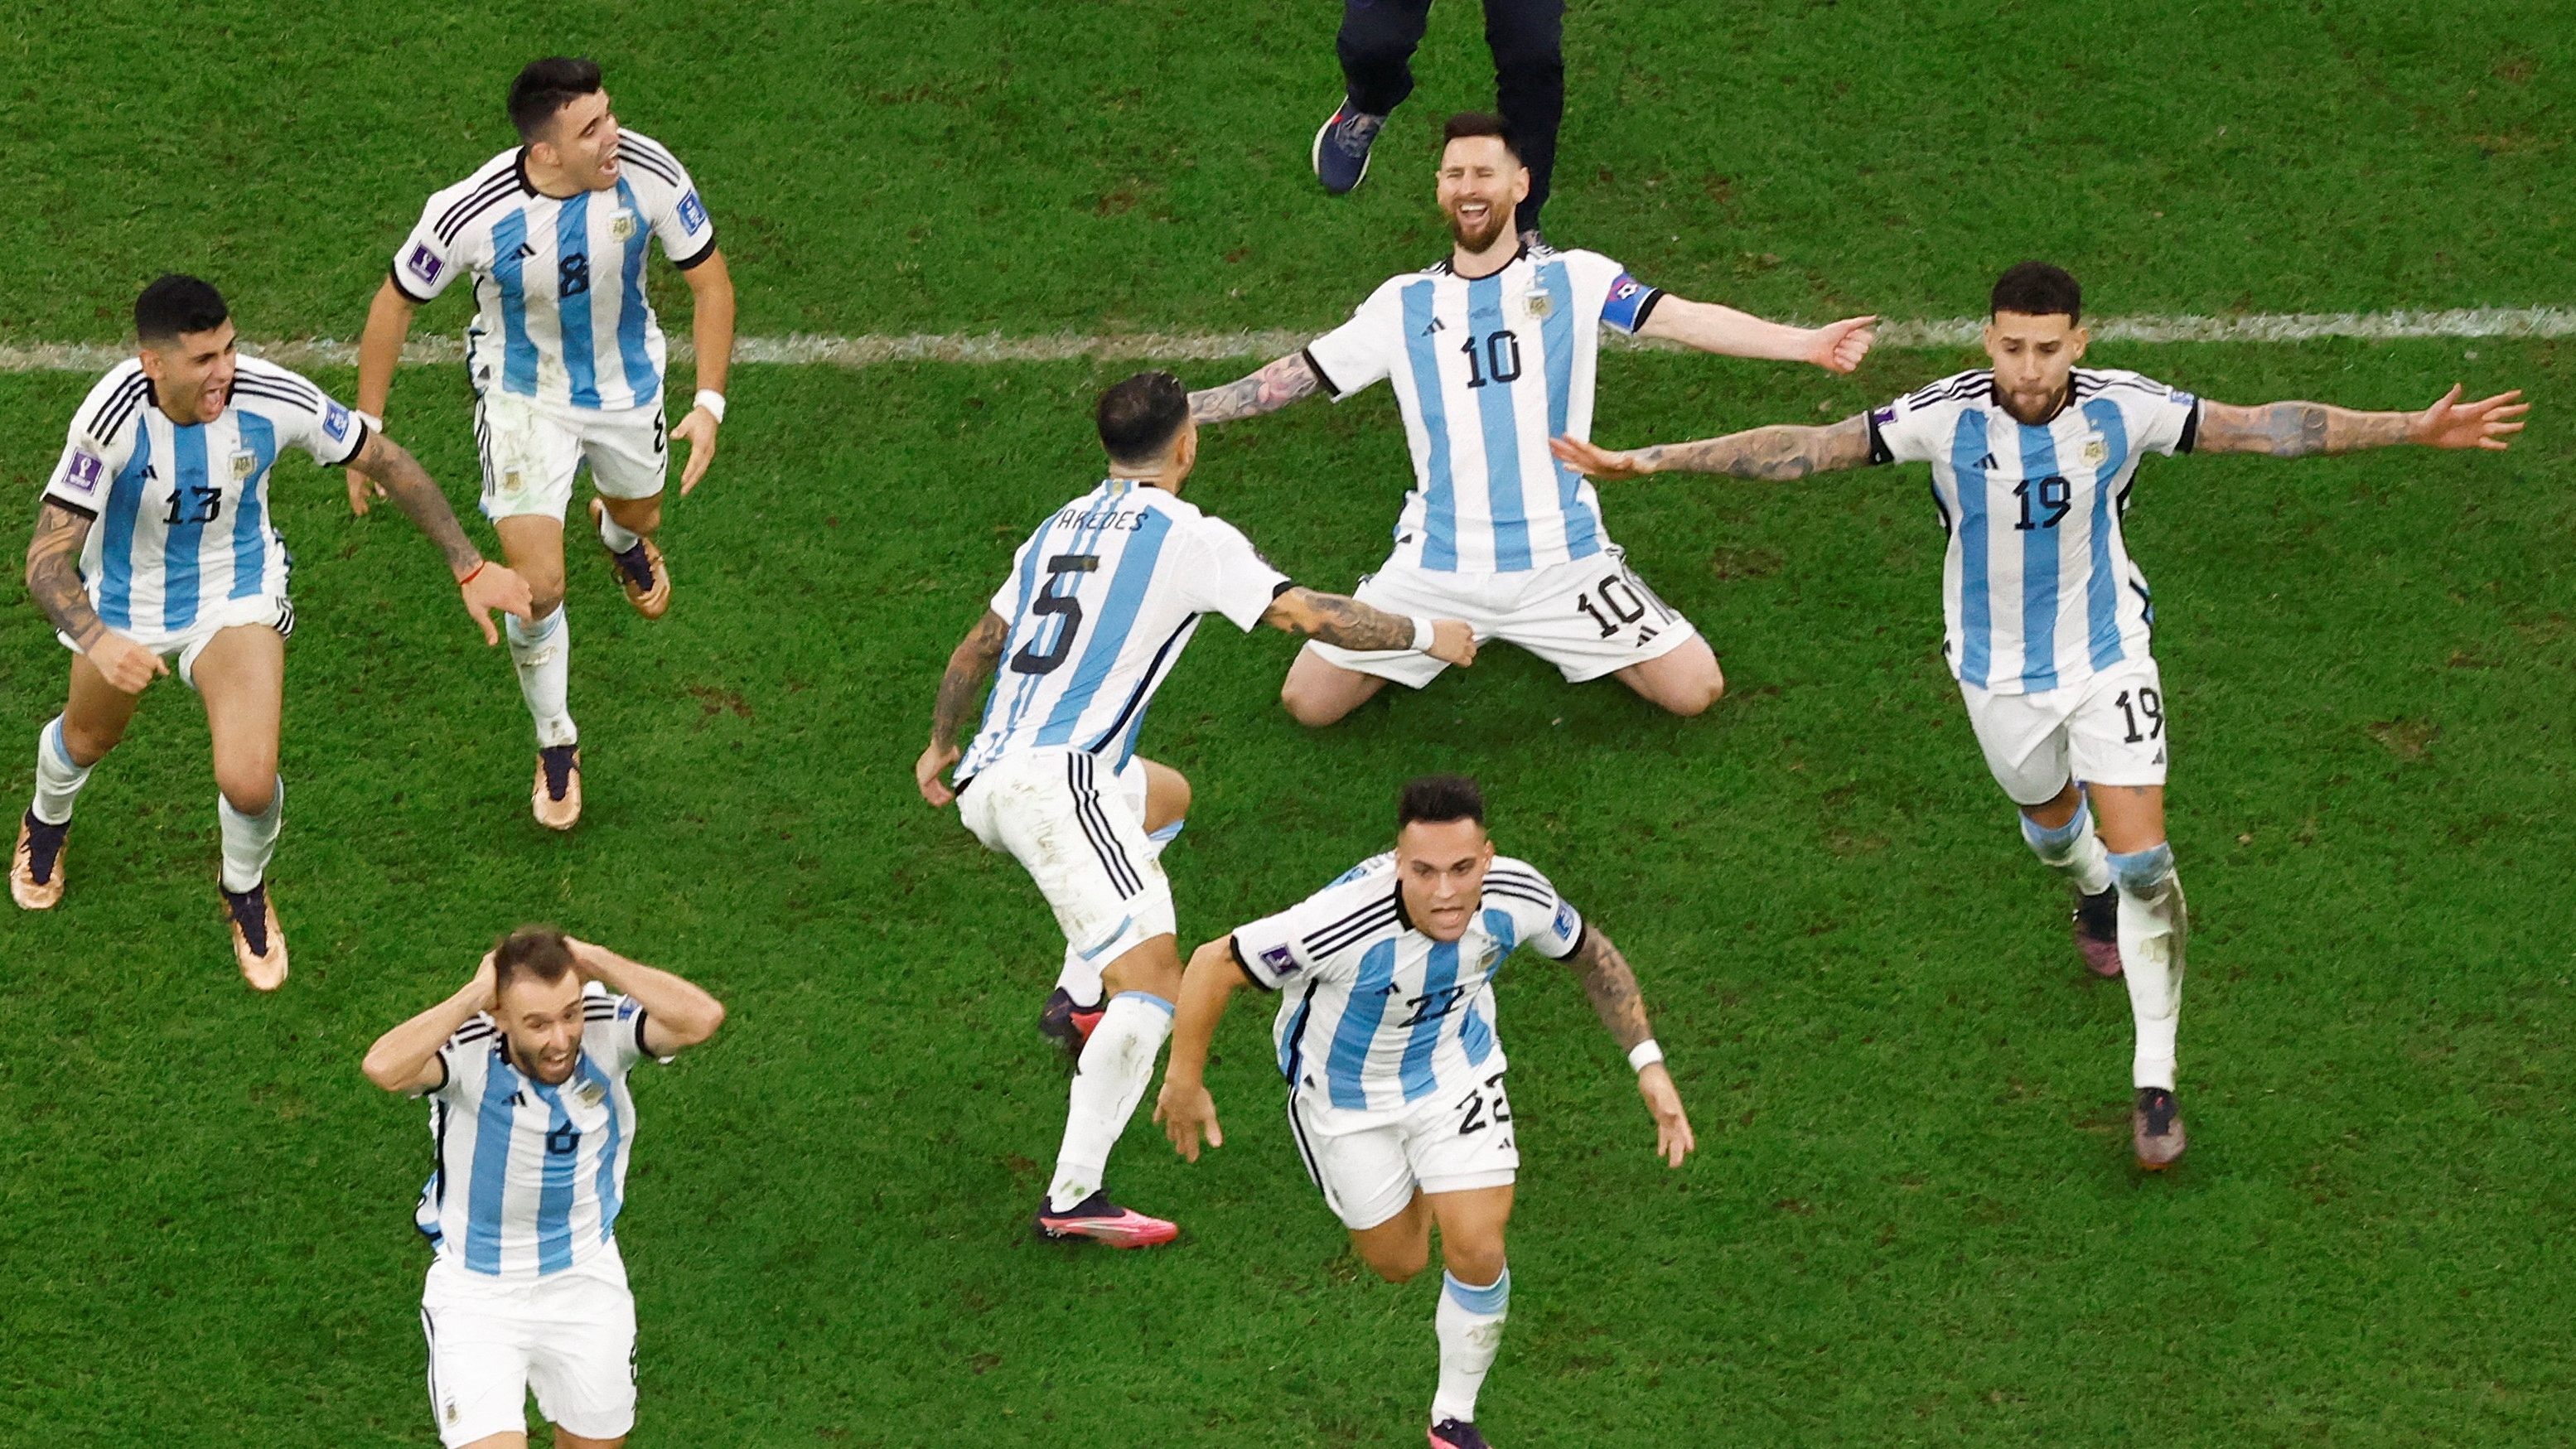 Los jugadores de la Selección llegarán a la Argentina pasada la medianoche (REUTERS/Peter Cziborra     TPX IMAGES OF THE DAY)